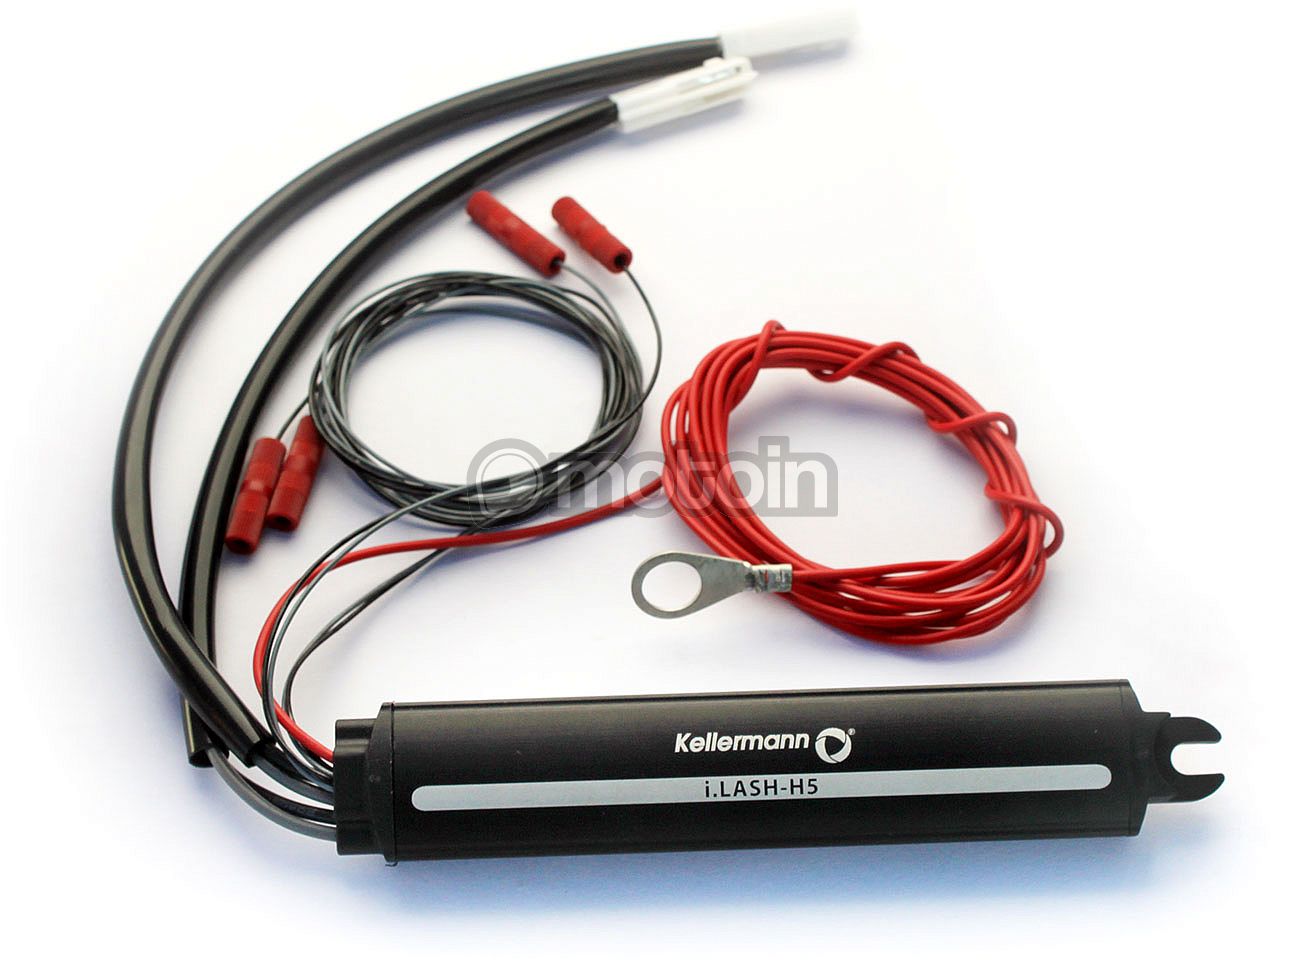 Kellermann i.LASH H5, adapter kabelset